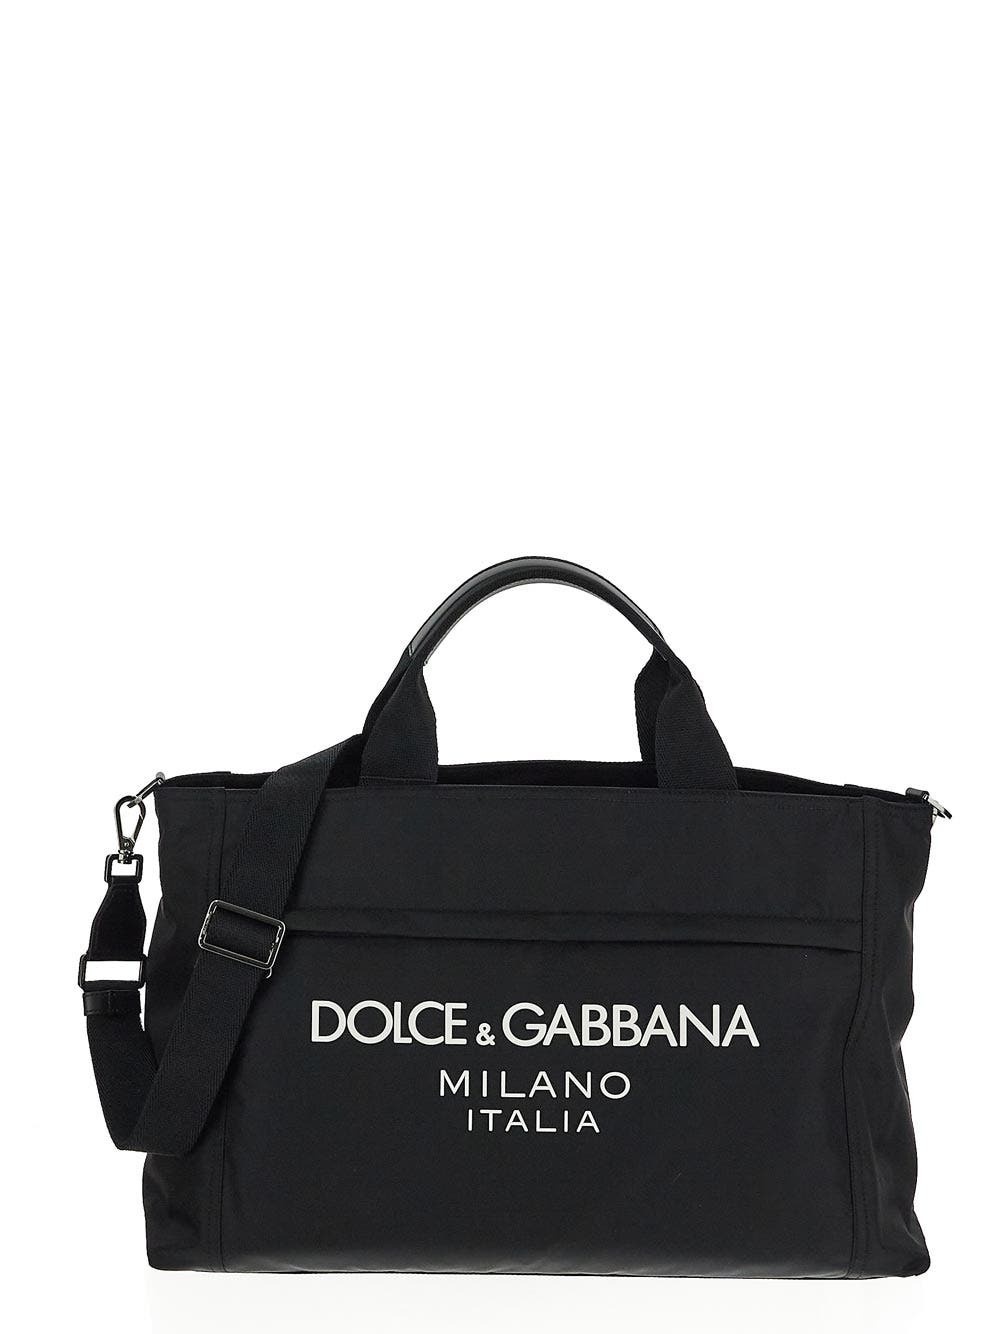 Photo: Dolce & Gabbana Logo Duffle Bag